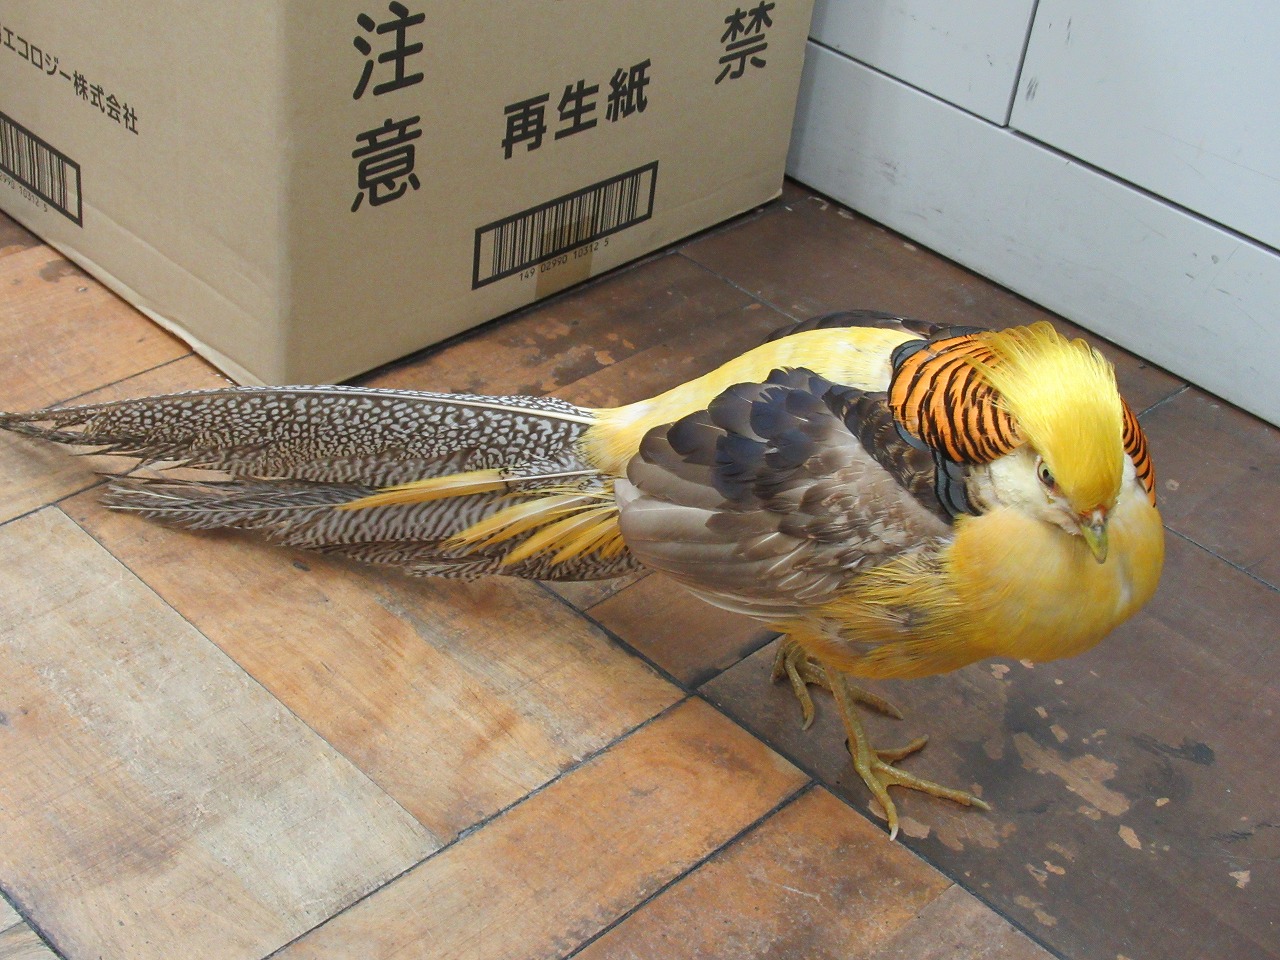 トランプ大統領にそっくり 金髪の鳥を保護 静岡 社会写真ニュース 日刊スポーツ